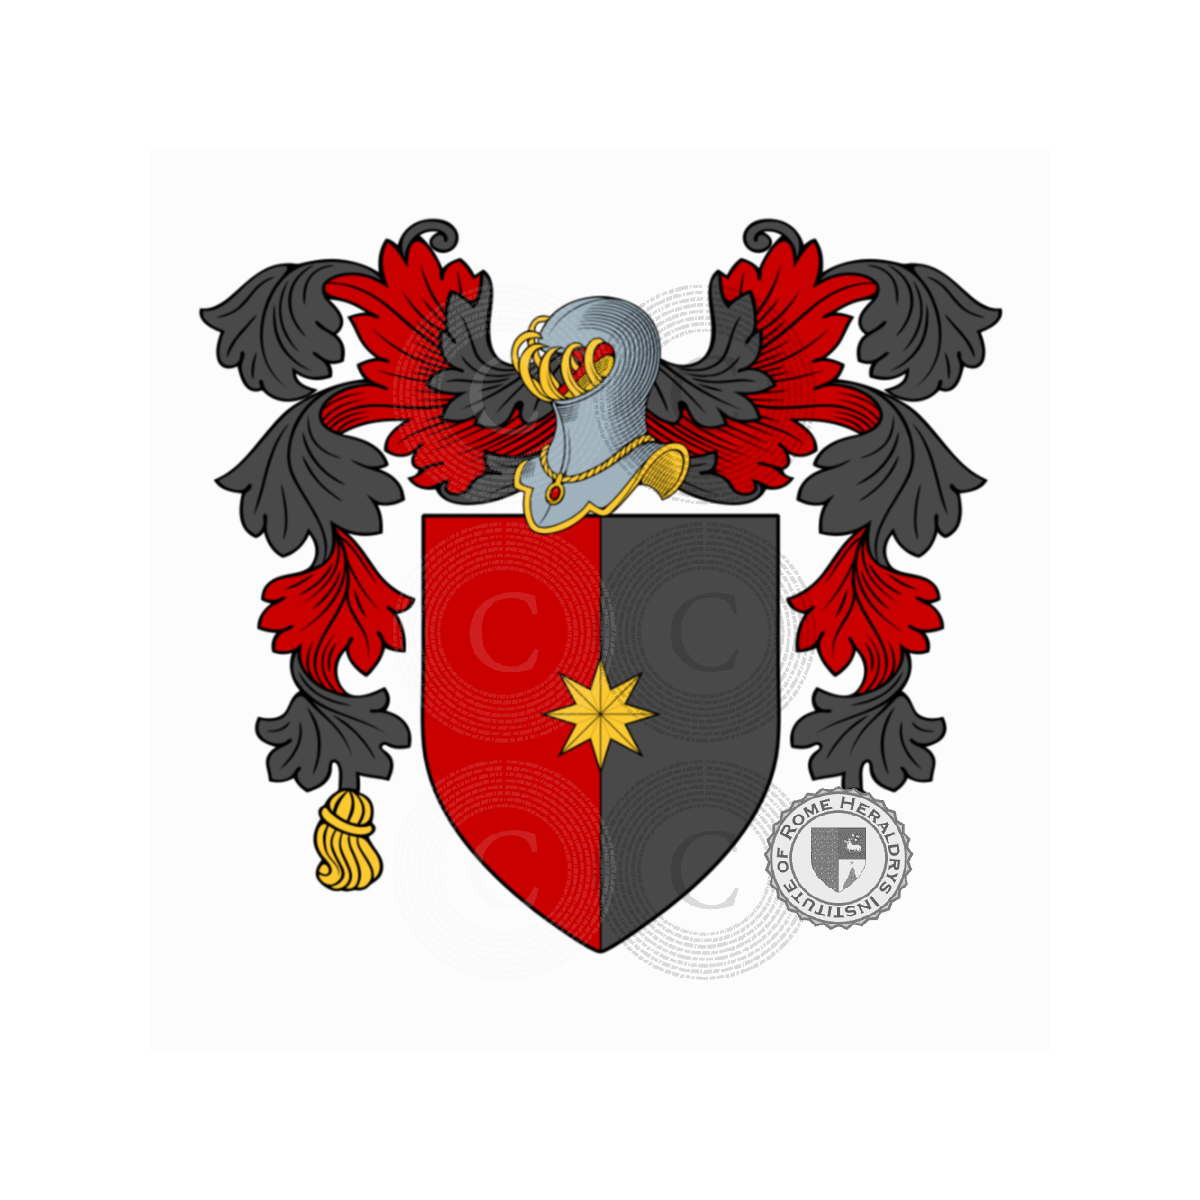 Escudo de la familiaStefani, Stefani bettoni,Stefani da Lucignano